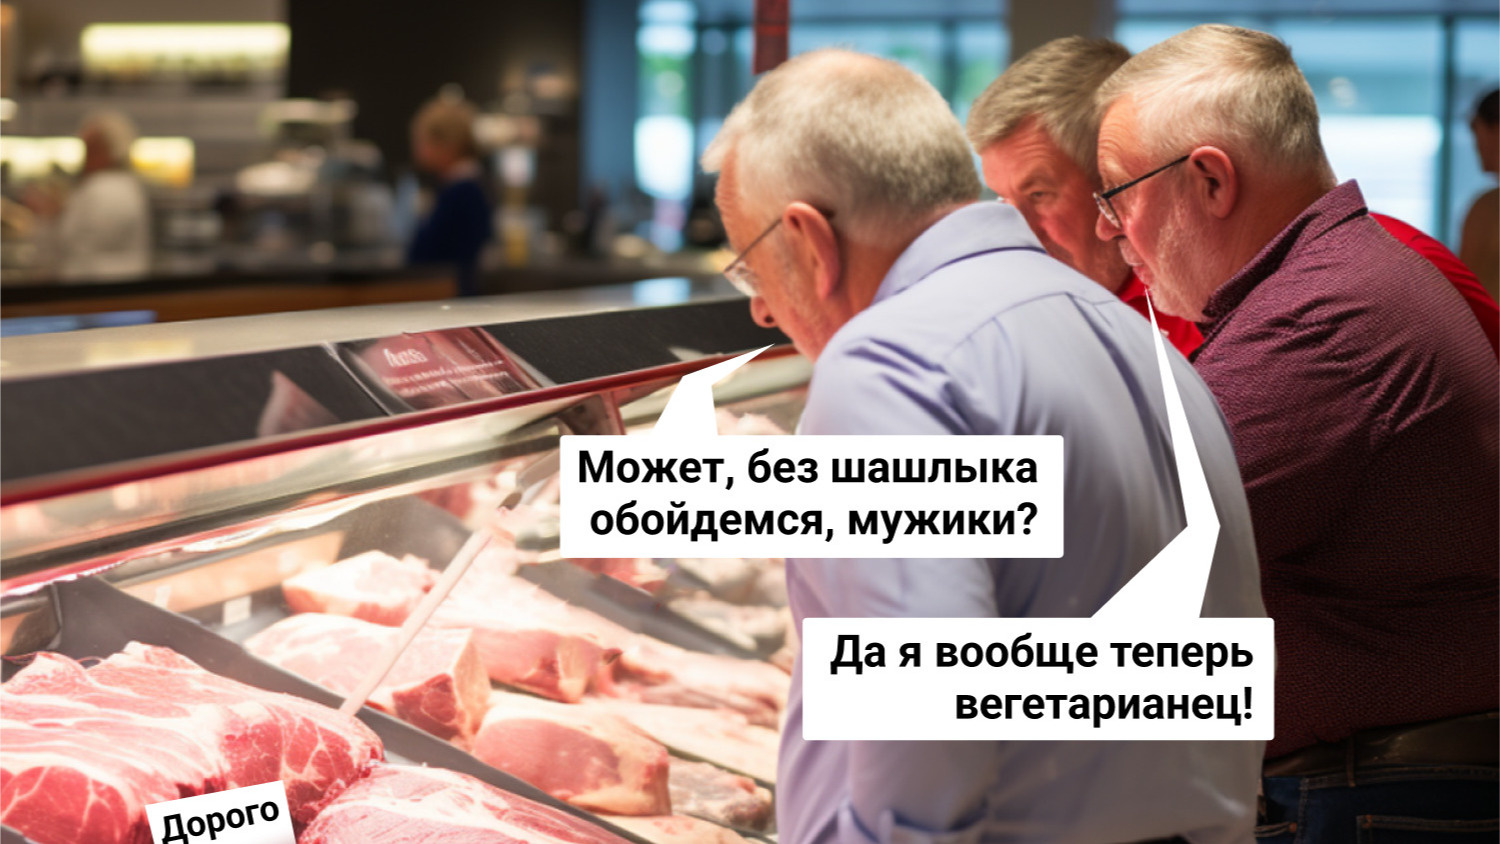 «Покупатели боятся, что это катастрофа». Вся правда о том, почему в России резко подорожало куриное мясо и что будет с ценами дальше